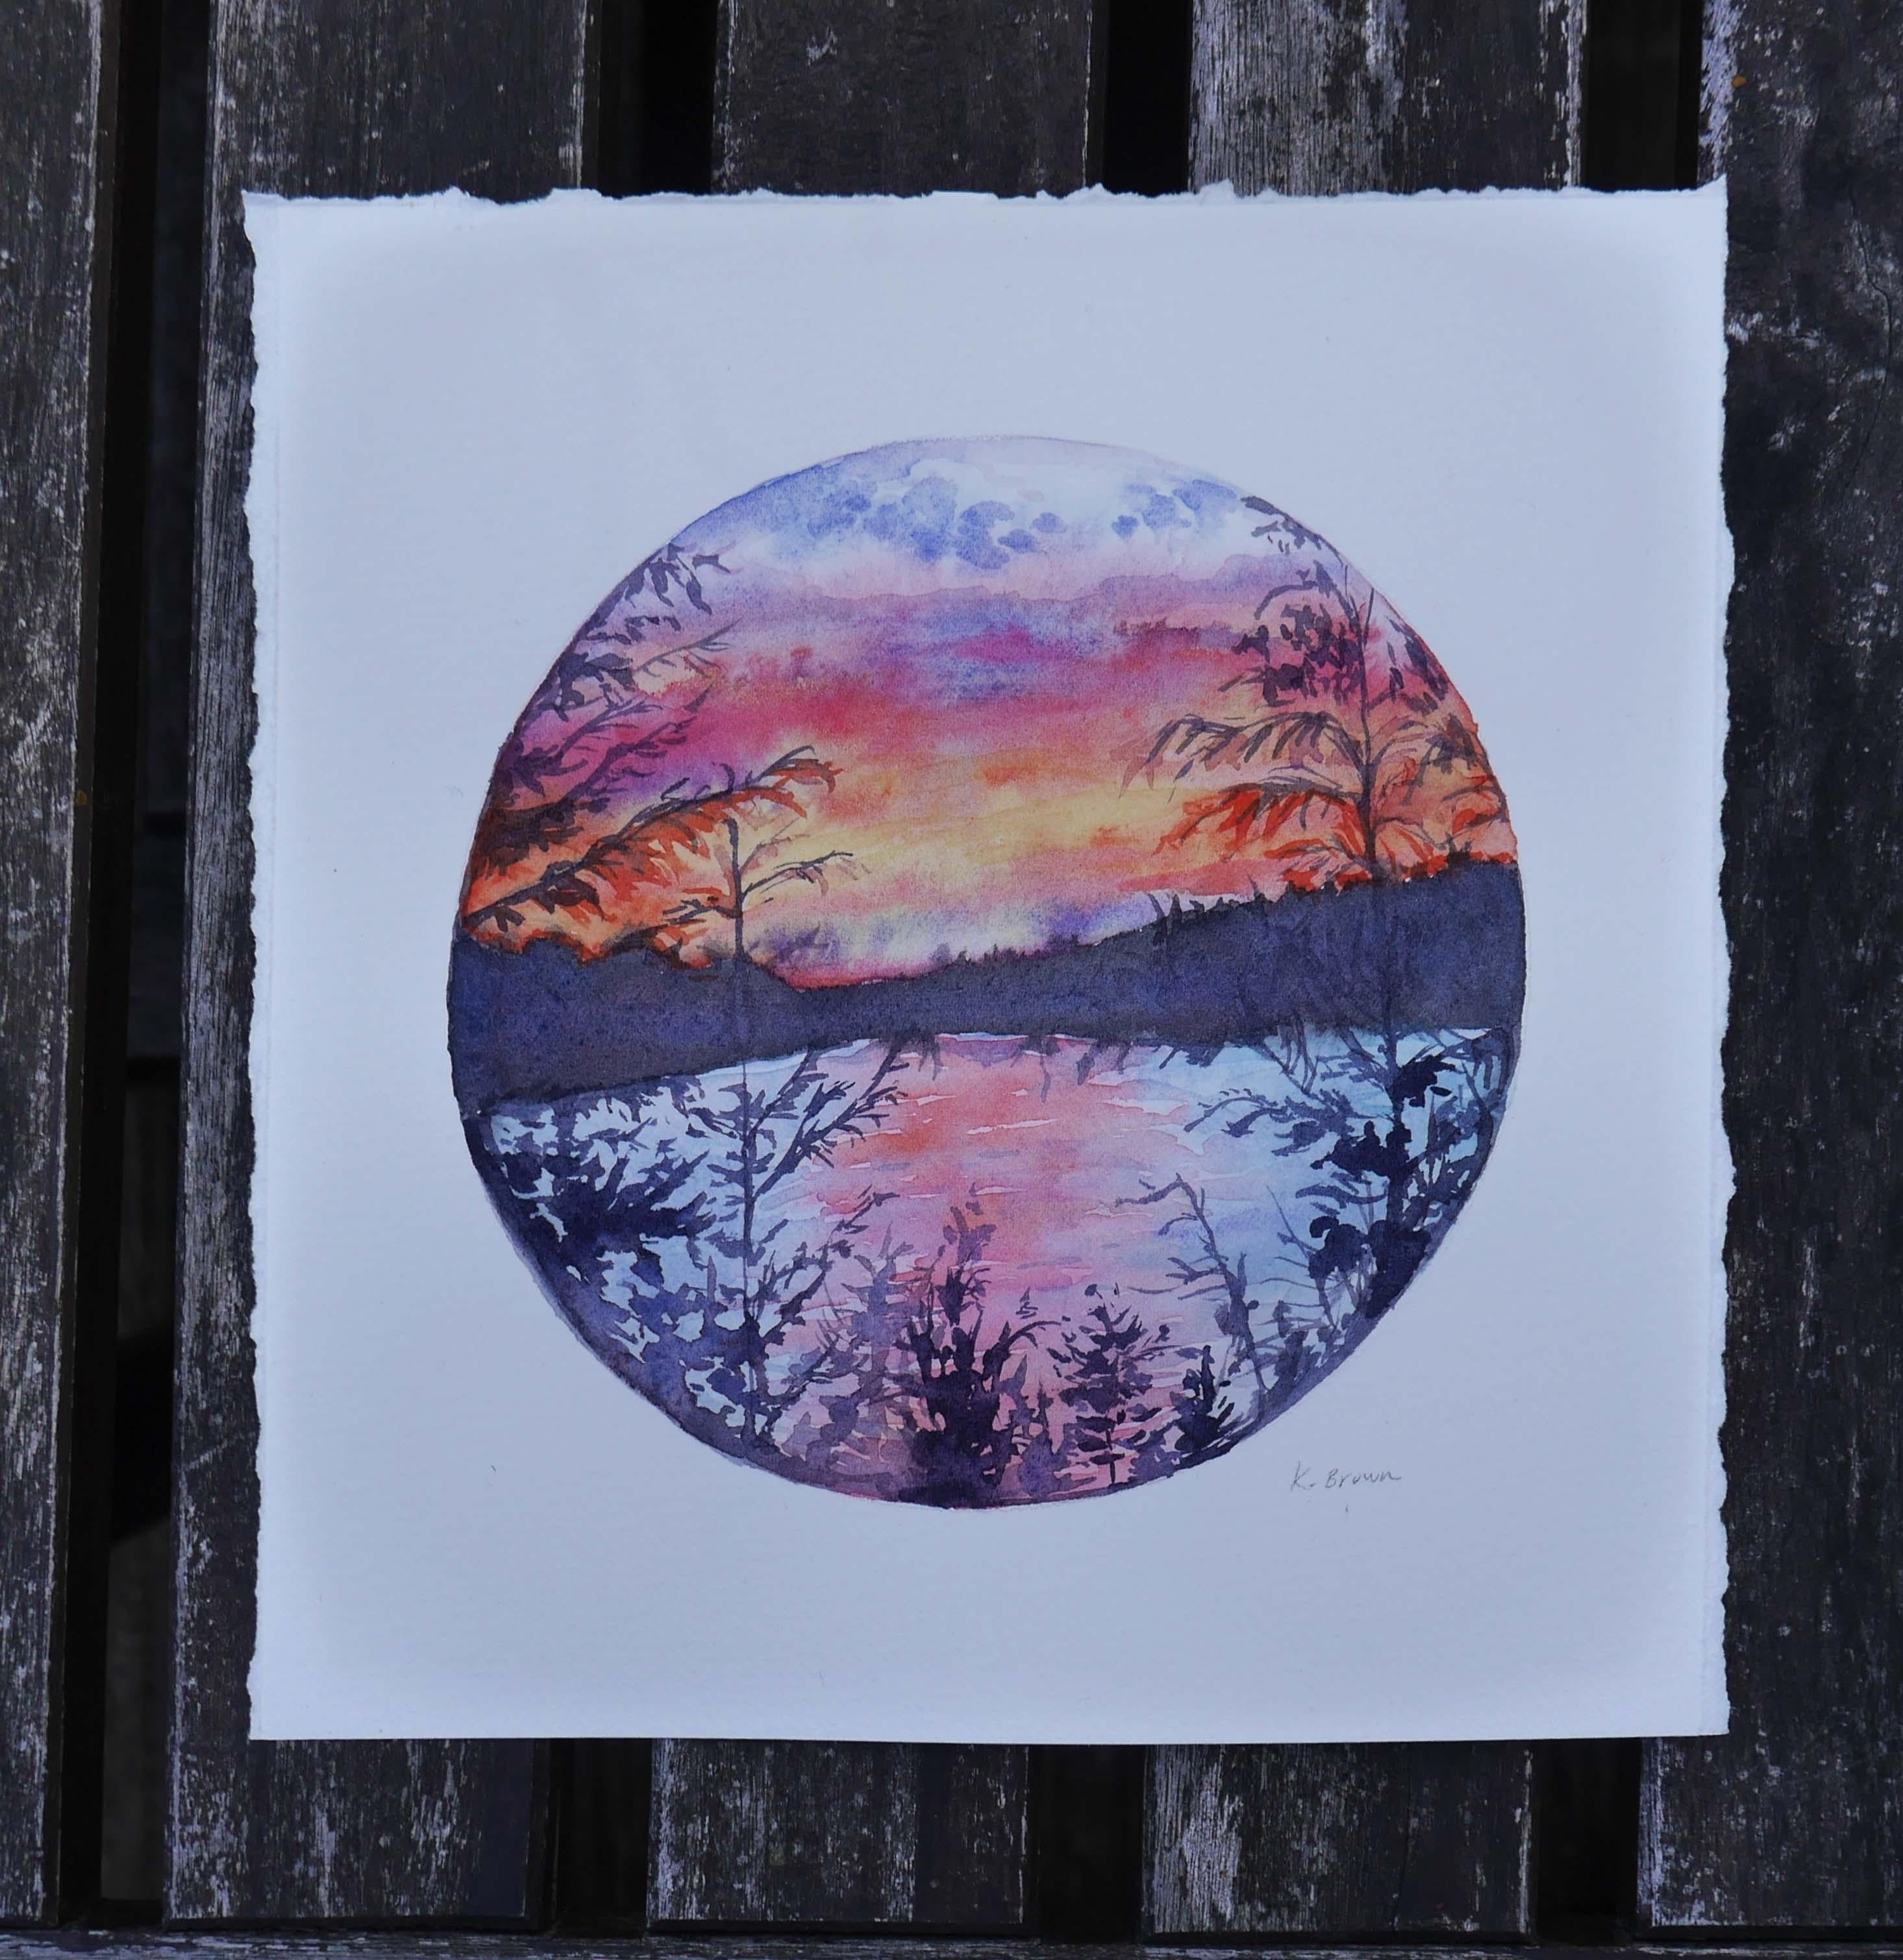 <p>Commentaires de l'artiste<br>L'artiste Kristen Brown représente une séparation d'arbres révélant un lac tranquille au crépuscule. La composition paisible capture les couleurs brillantes de la lumière du soir avec les arbres de la forêt rendus par